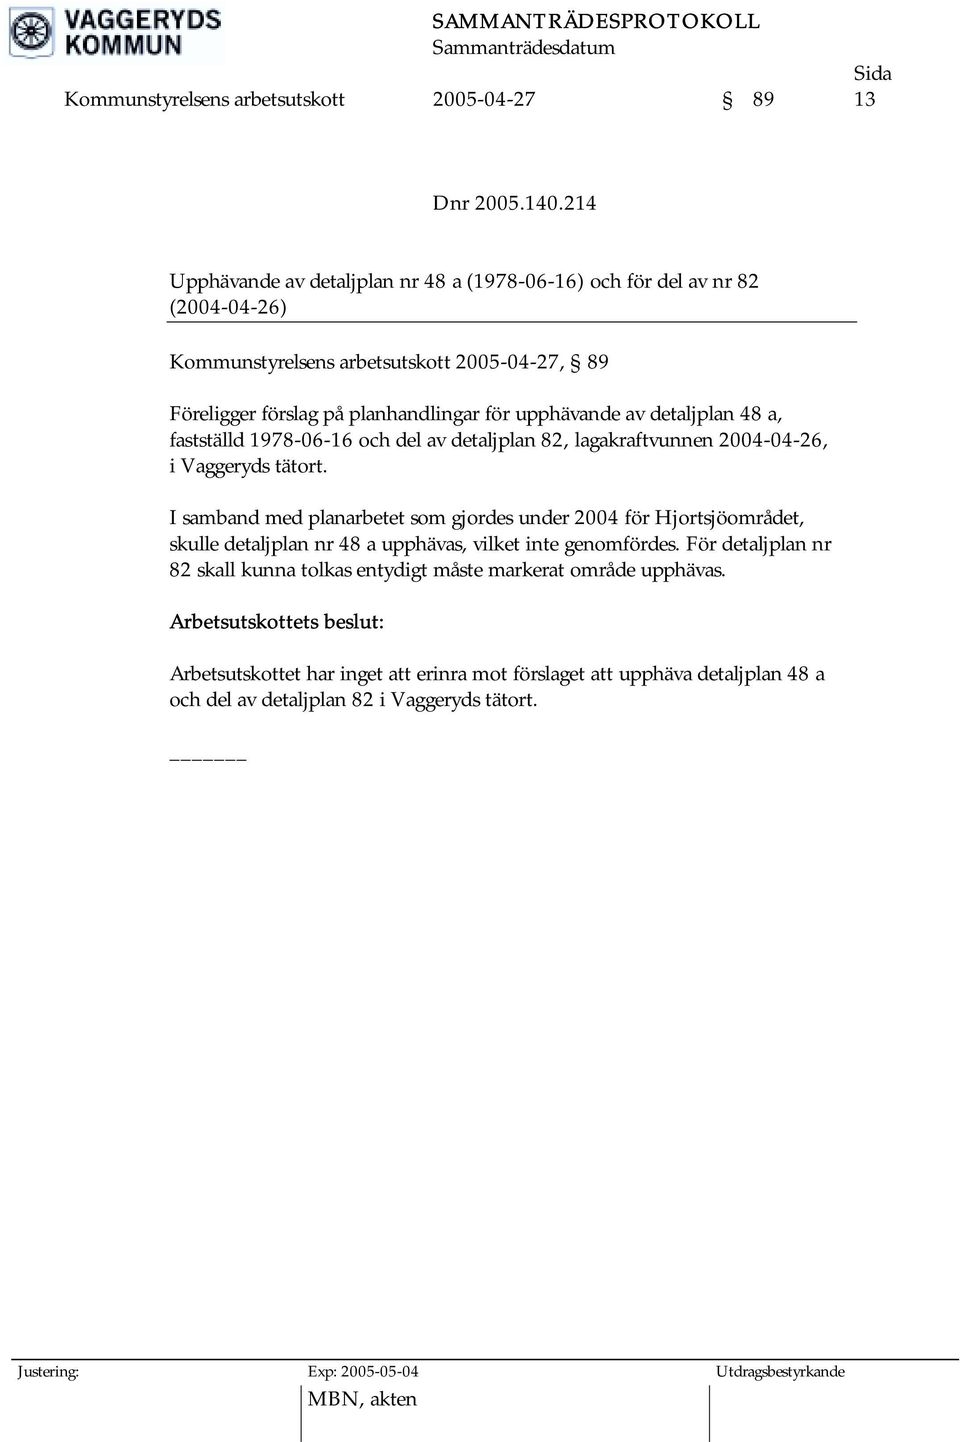 av detaljplan 48 a, fastställd 1978-06-16 och del av detaljplan 82, lagakraftvunnen 2004-04-26, i Vaggeryds tätort.